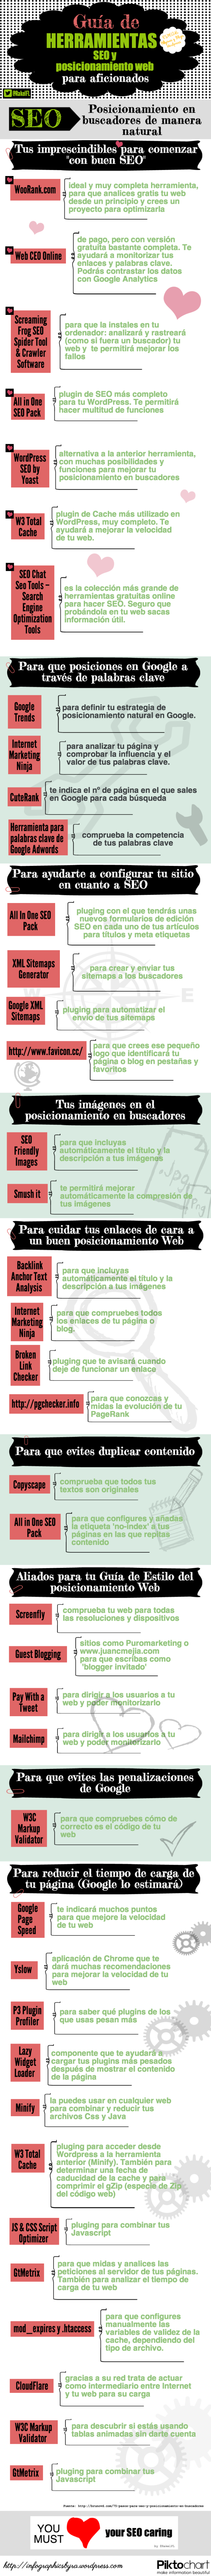 Guía de Herramientas SEO y Posicionamiento en buscadores, infografía by Rakel Felipe.